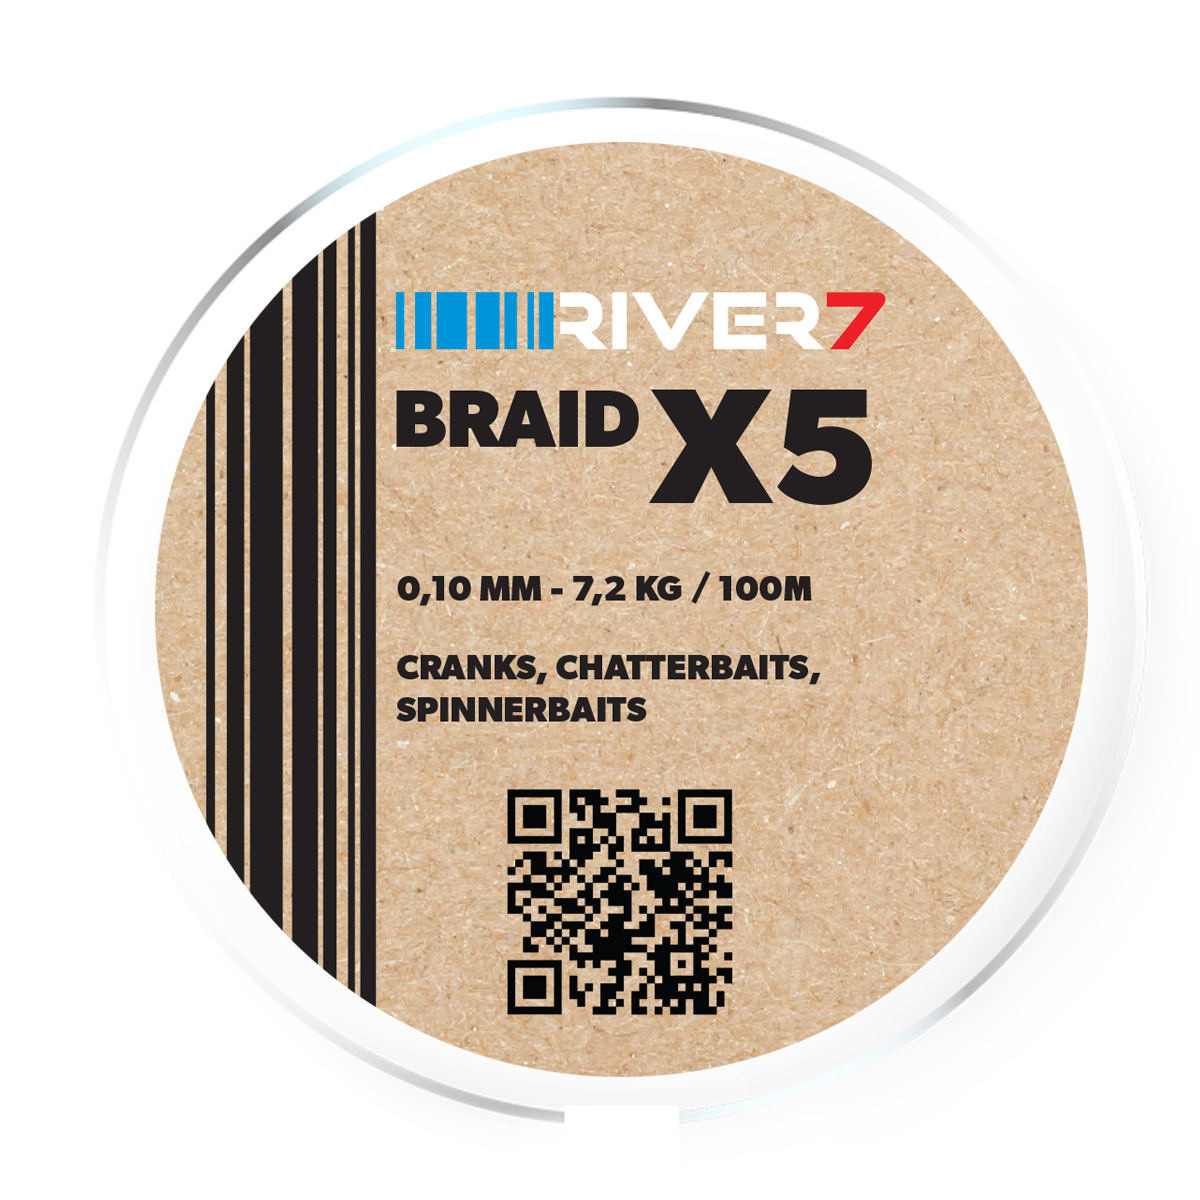 River7 X5 Braid -  0.10 mm